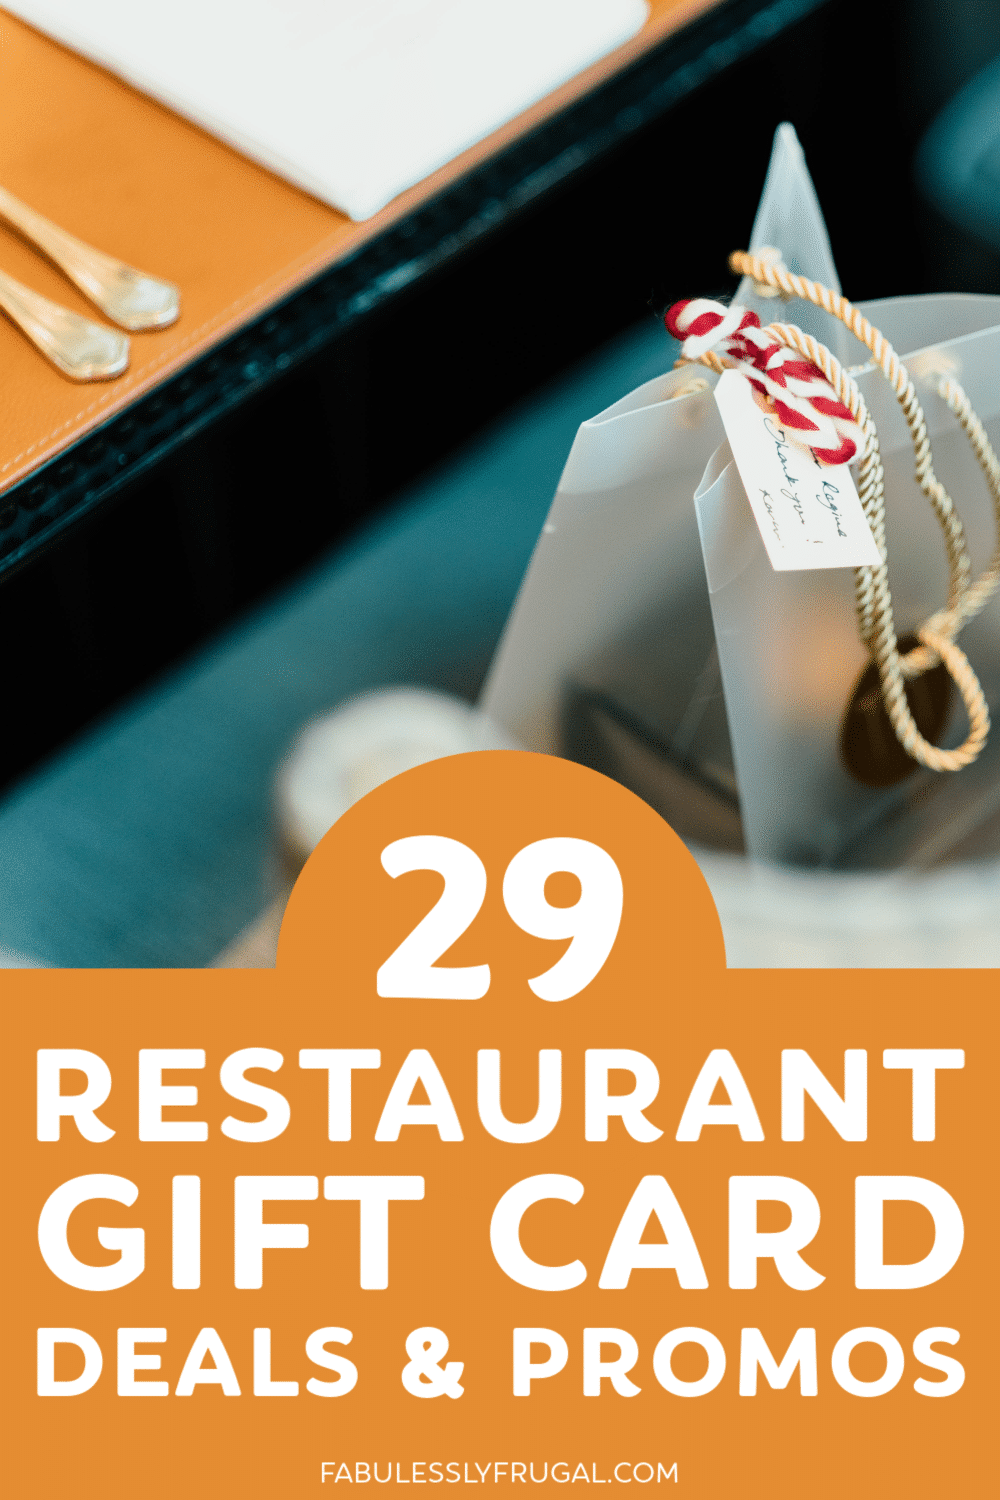 Restaurant gift card deals